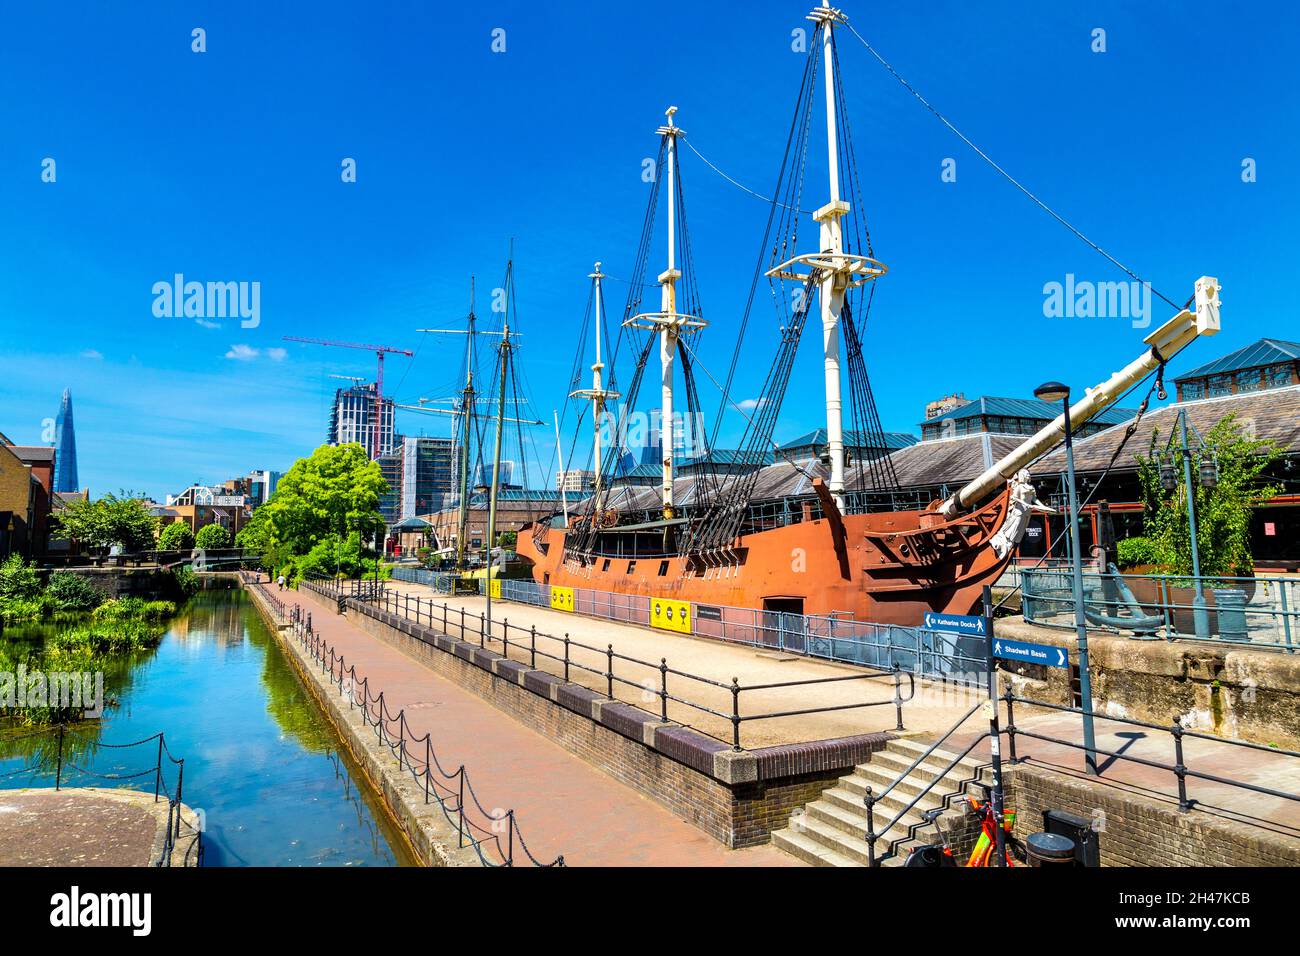 El barco réplica de las Tres Hermanas en el Tobacco Dock, por el Canal Ornamental, Wapping, Londres, Reino Unido Foto de stock